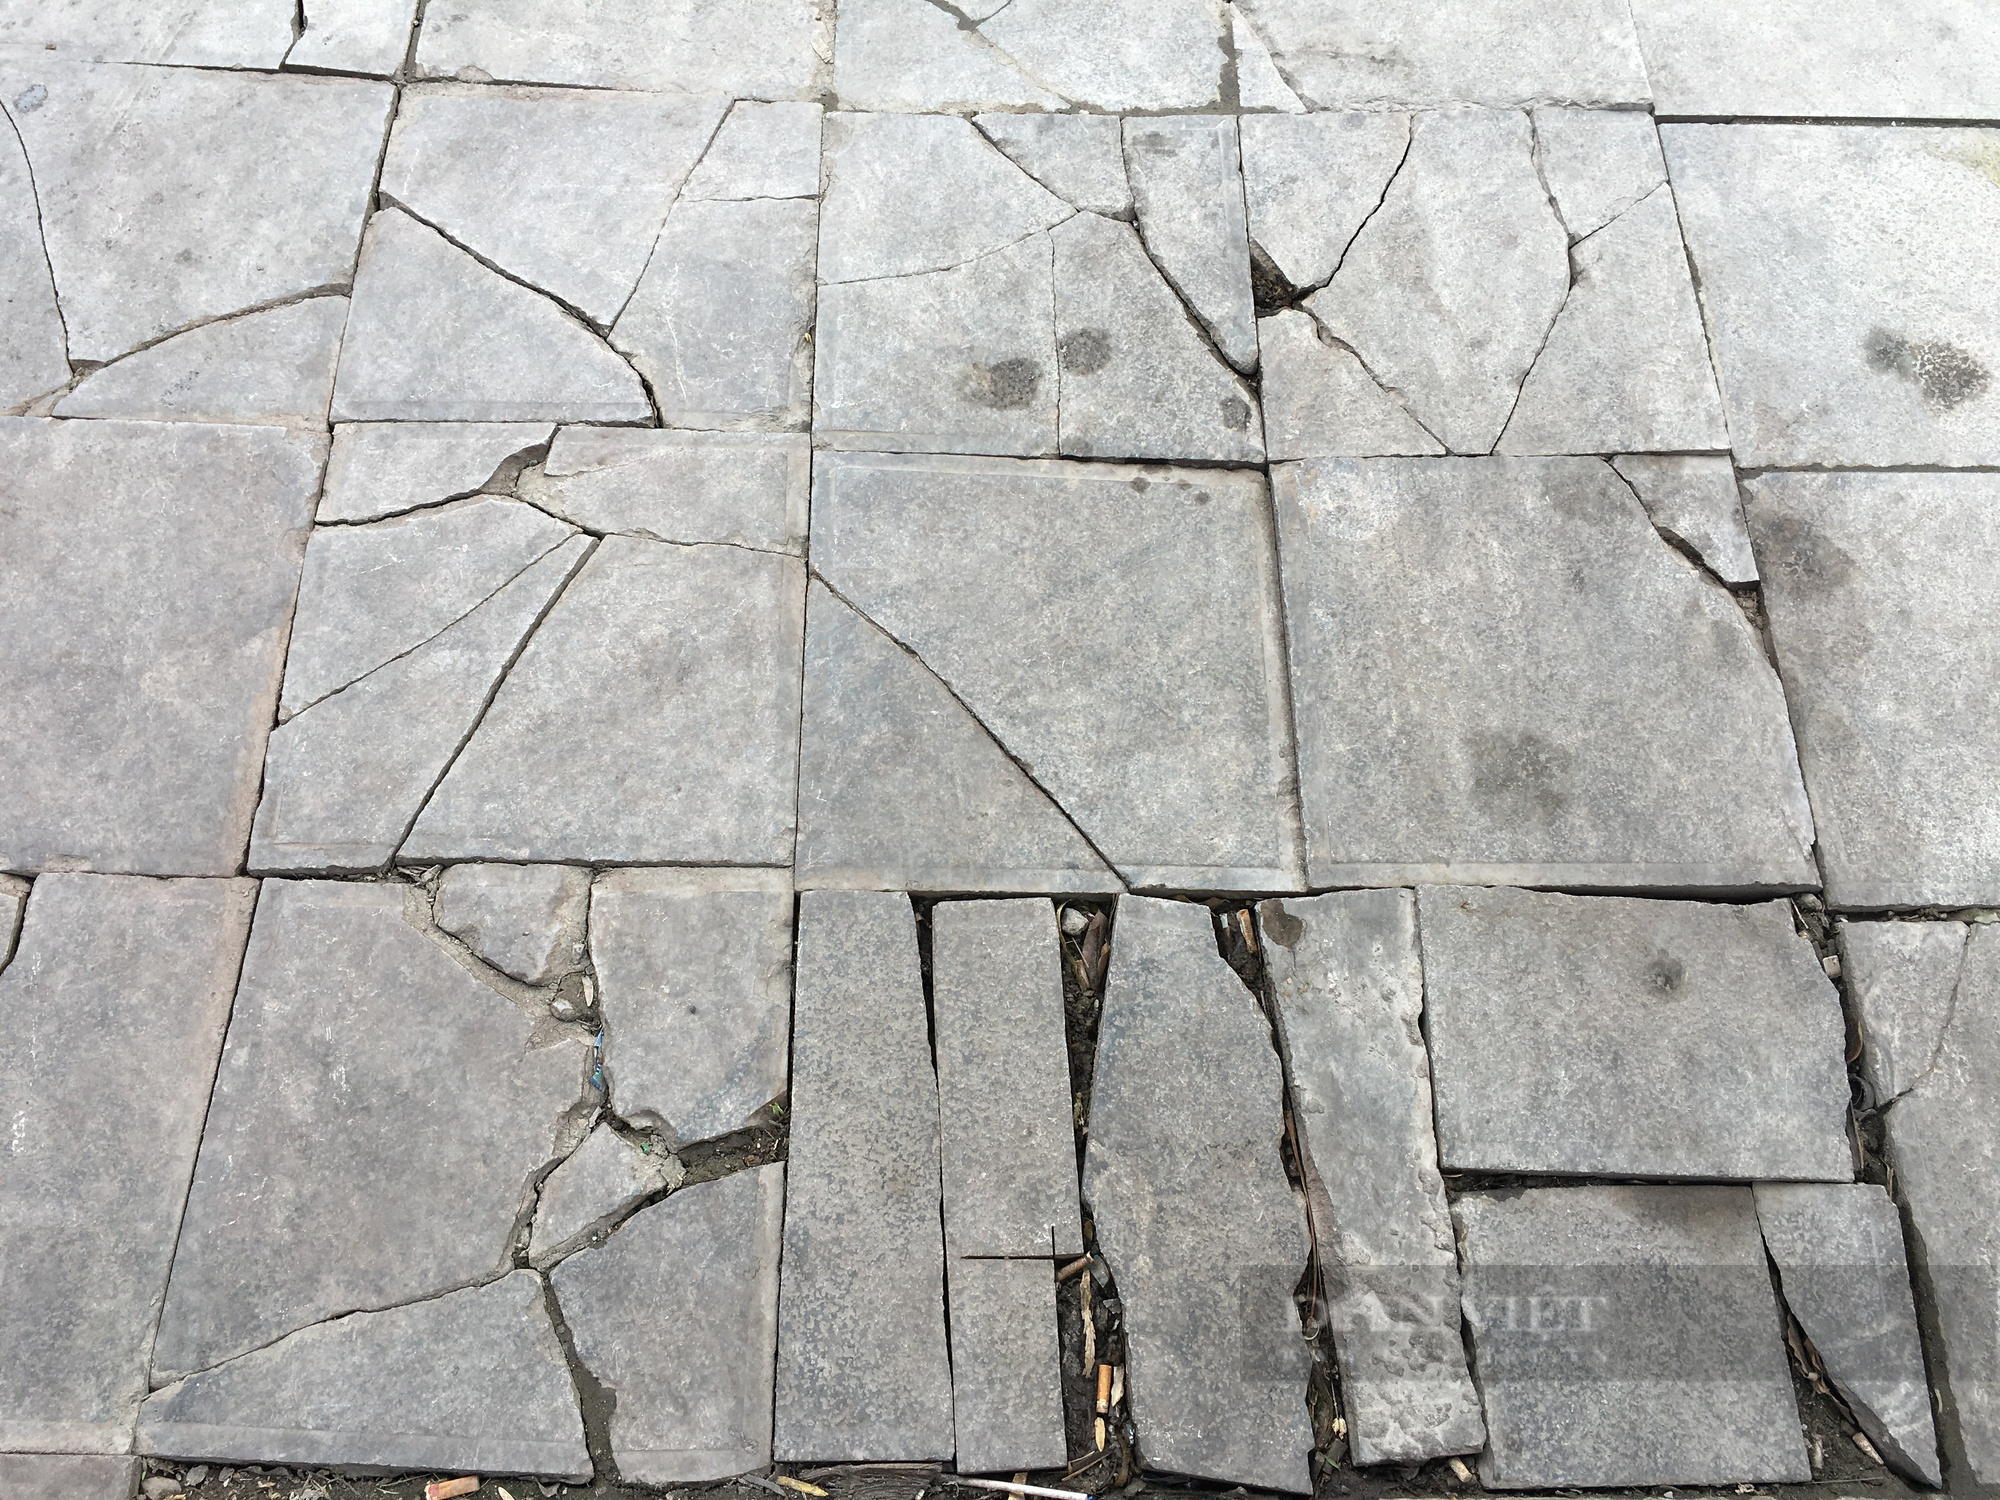 Lát đá vỉa hè ở Hà Nội: Đá tự nhiên hay gạch giả đá đều vỡ nát như nhau - Ảnh 8.